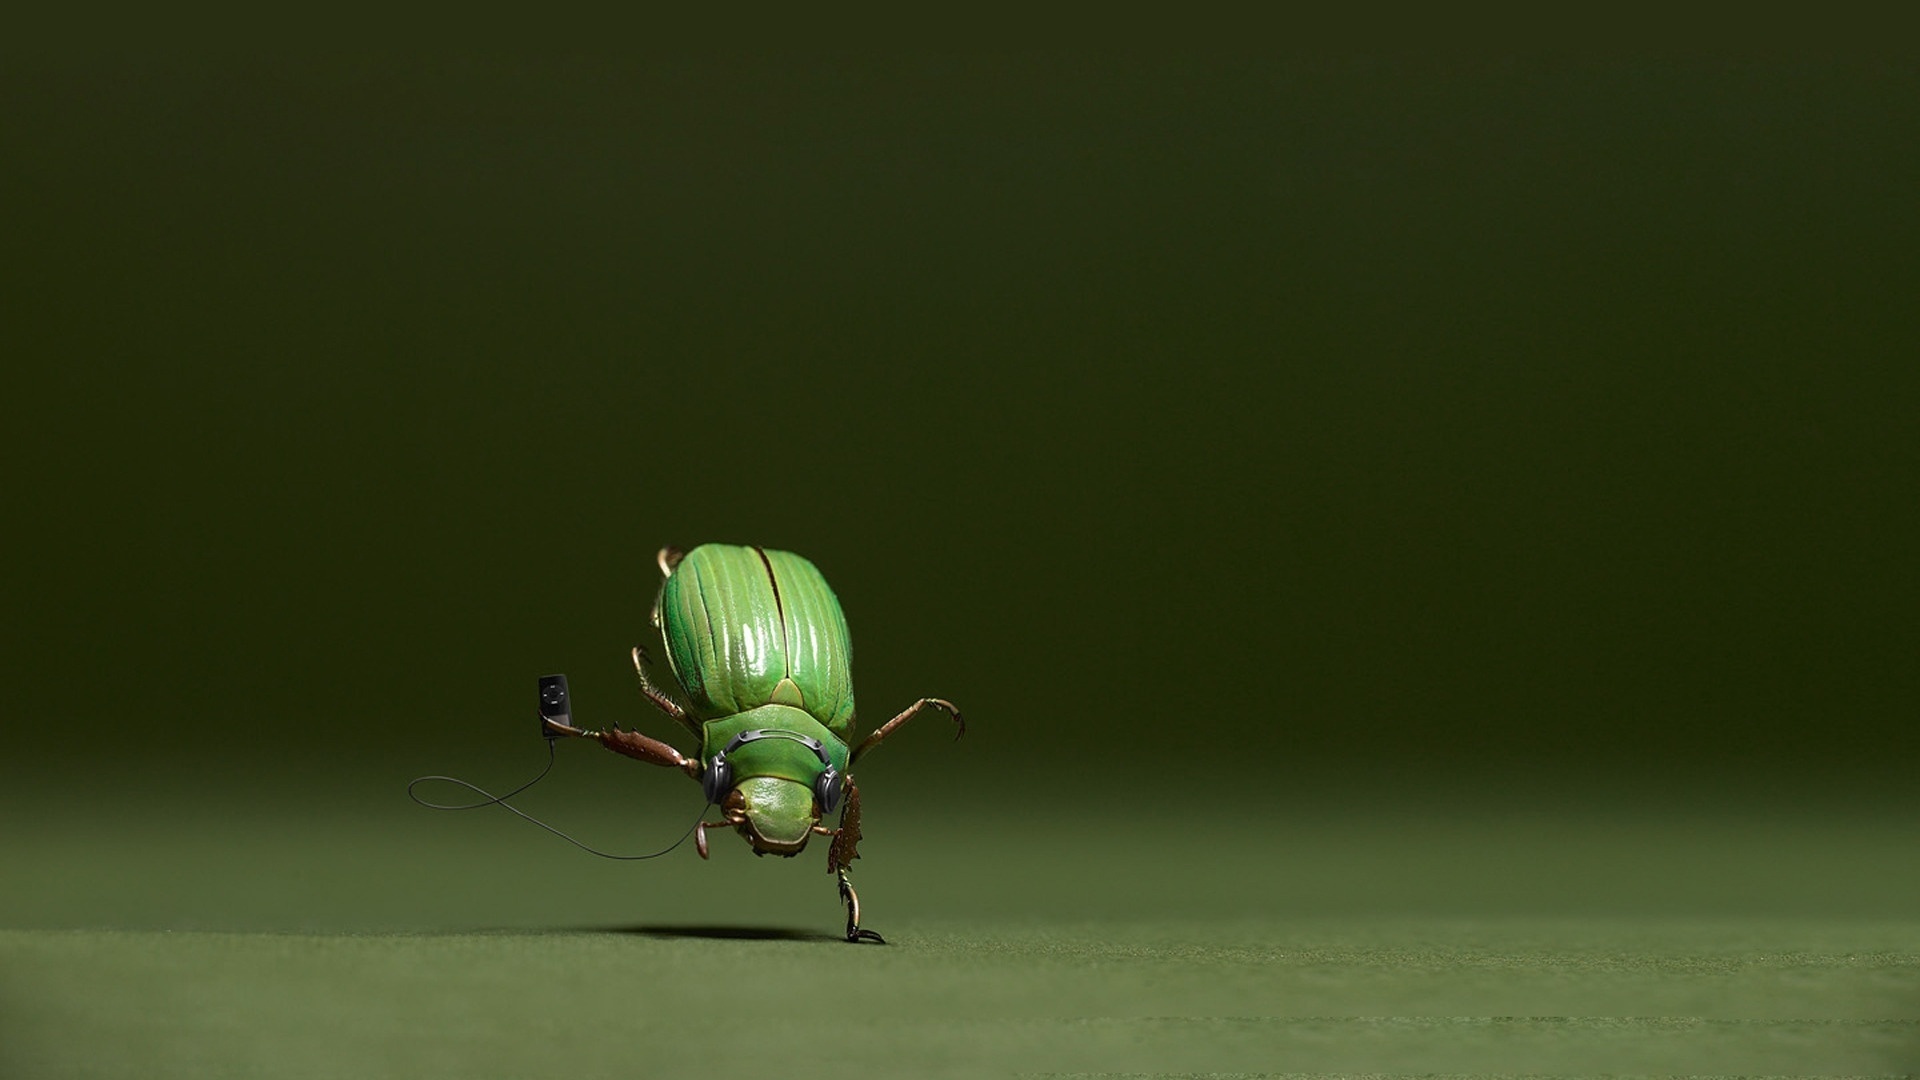 
Энтомологи открыли жука с ручкой
